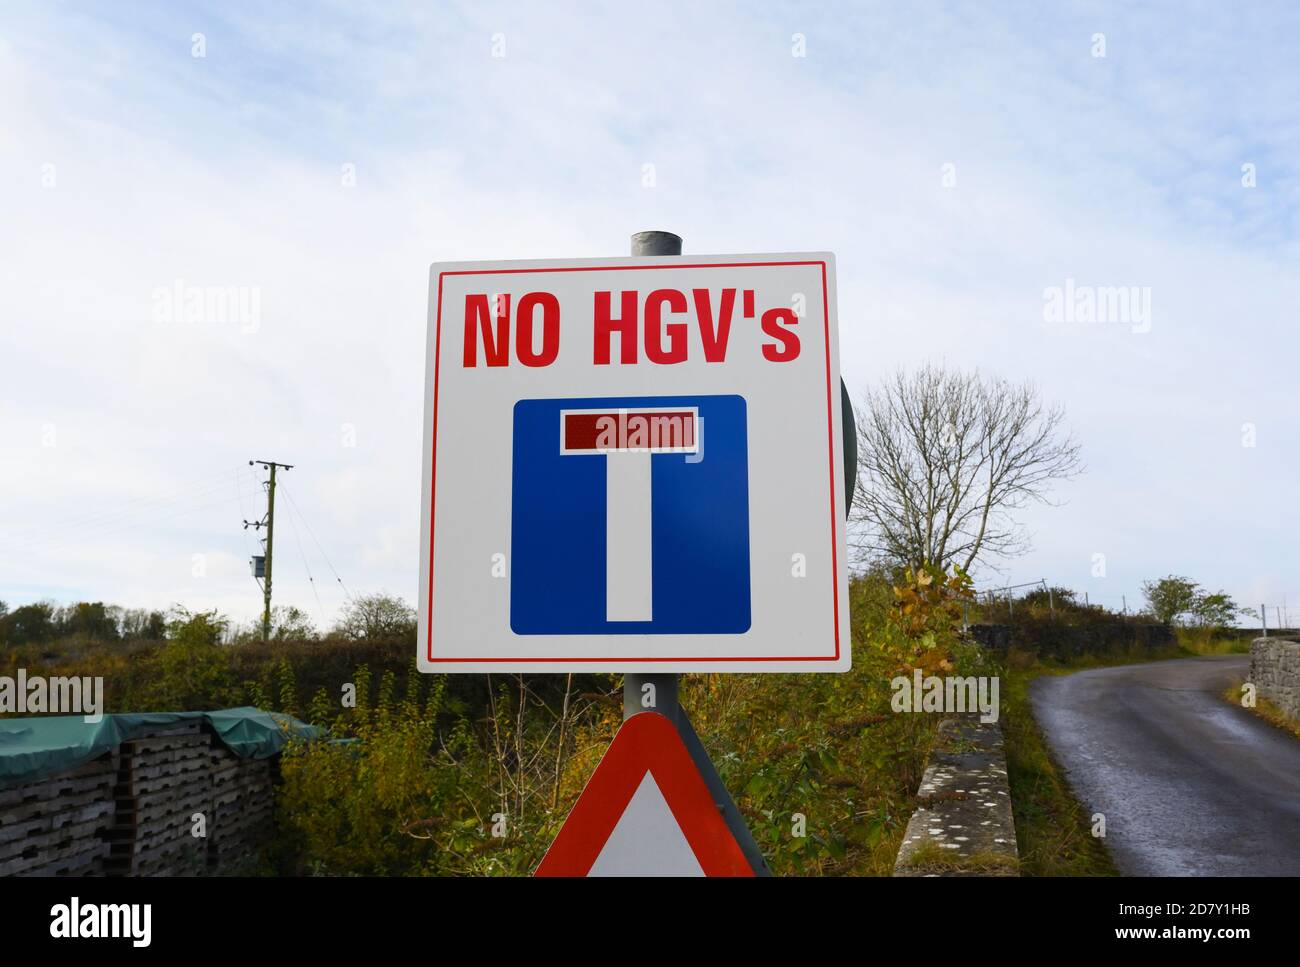 Signe d'avertissement avec apostrophe mal placée, « PAS de VHG ». Boundary Bank Lane, Kendal, Cumbria, Angleterre, Royaume-Uni. Banque D'Images